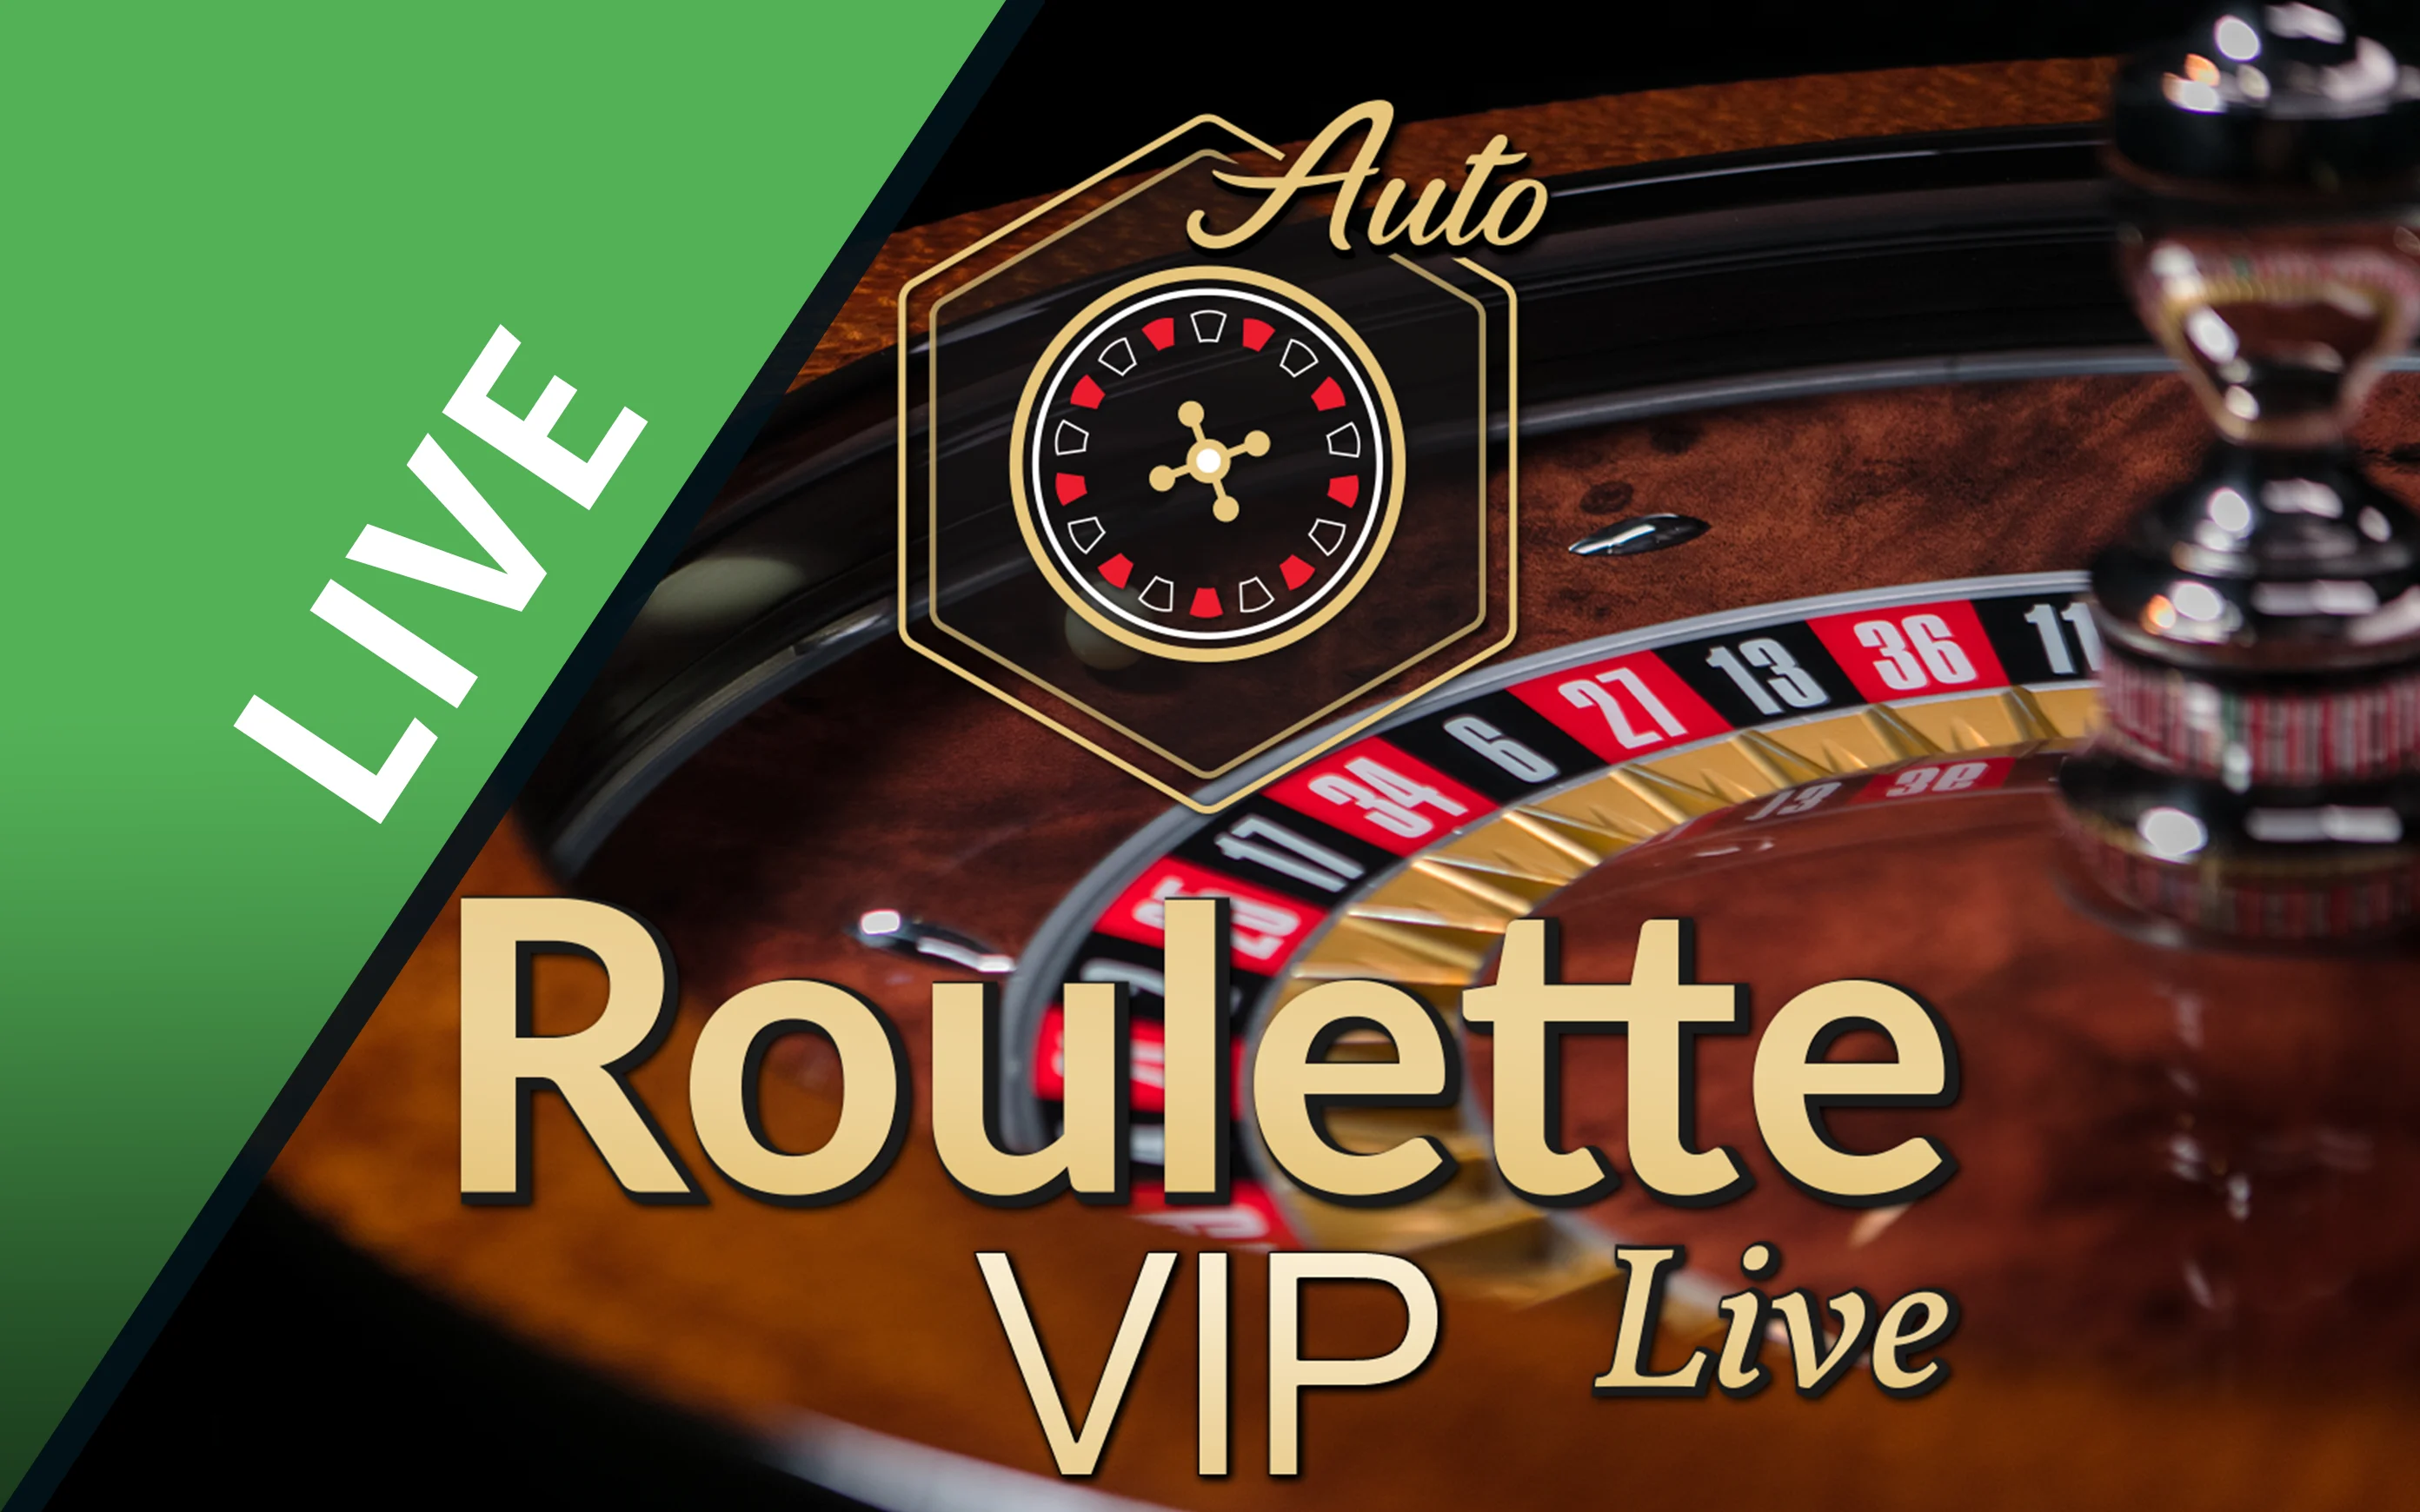 Gioca a Auto Roulette VIP sul casino online Starcasino.be